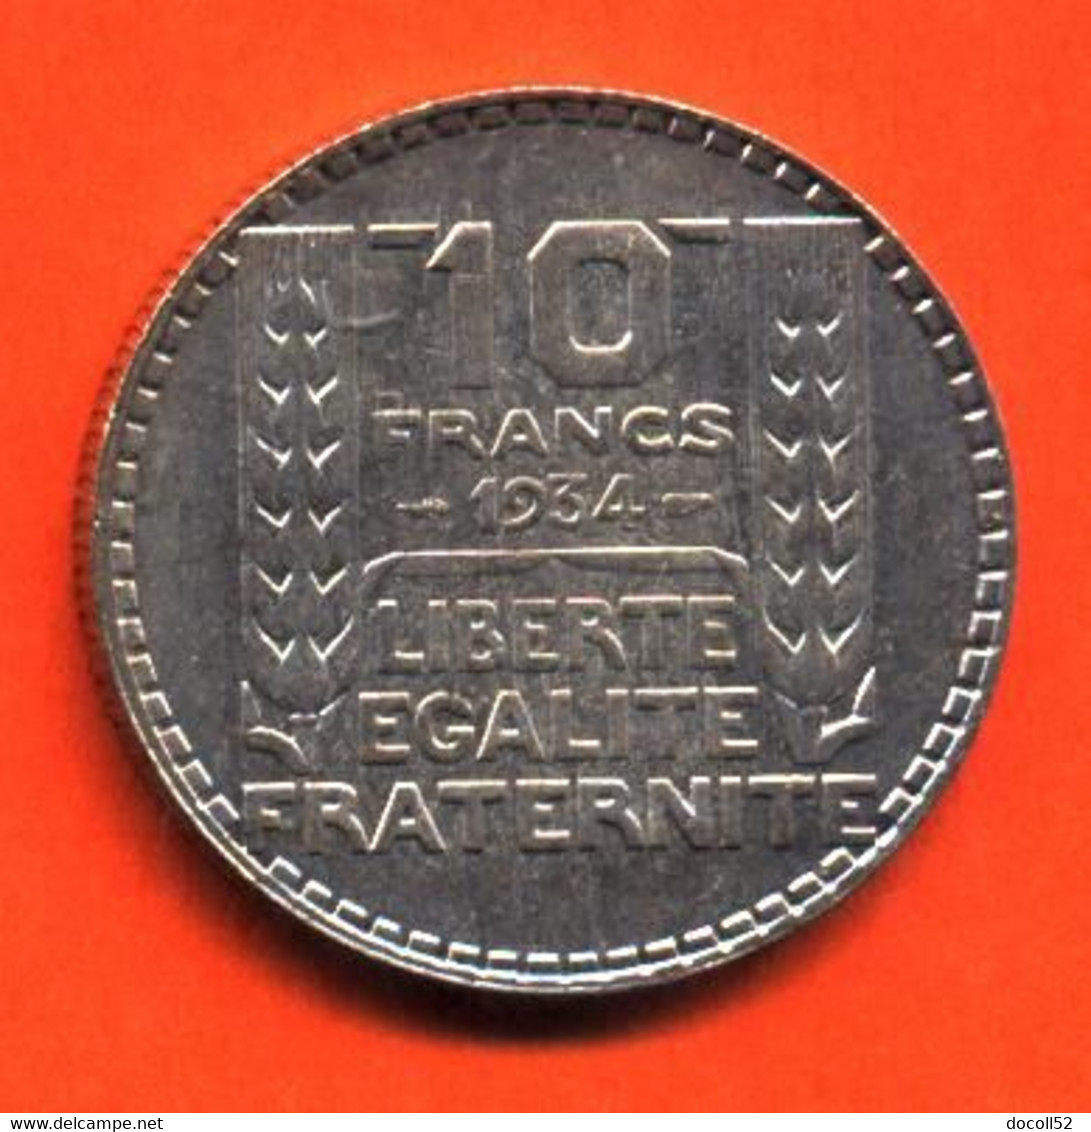 MONNAIE DE 10 FRANCS ARGENT 1934 " TURIN " QUALITE SPL - VOIR 2 SCANS - 10 Francs